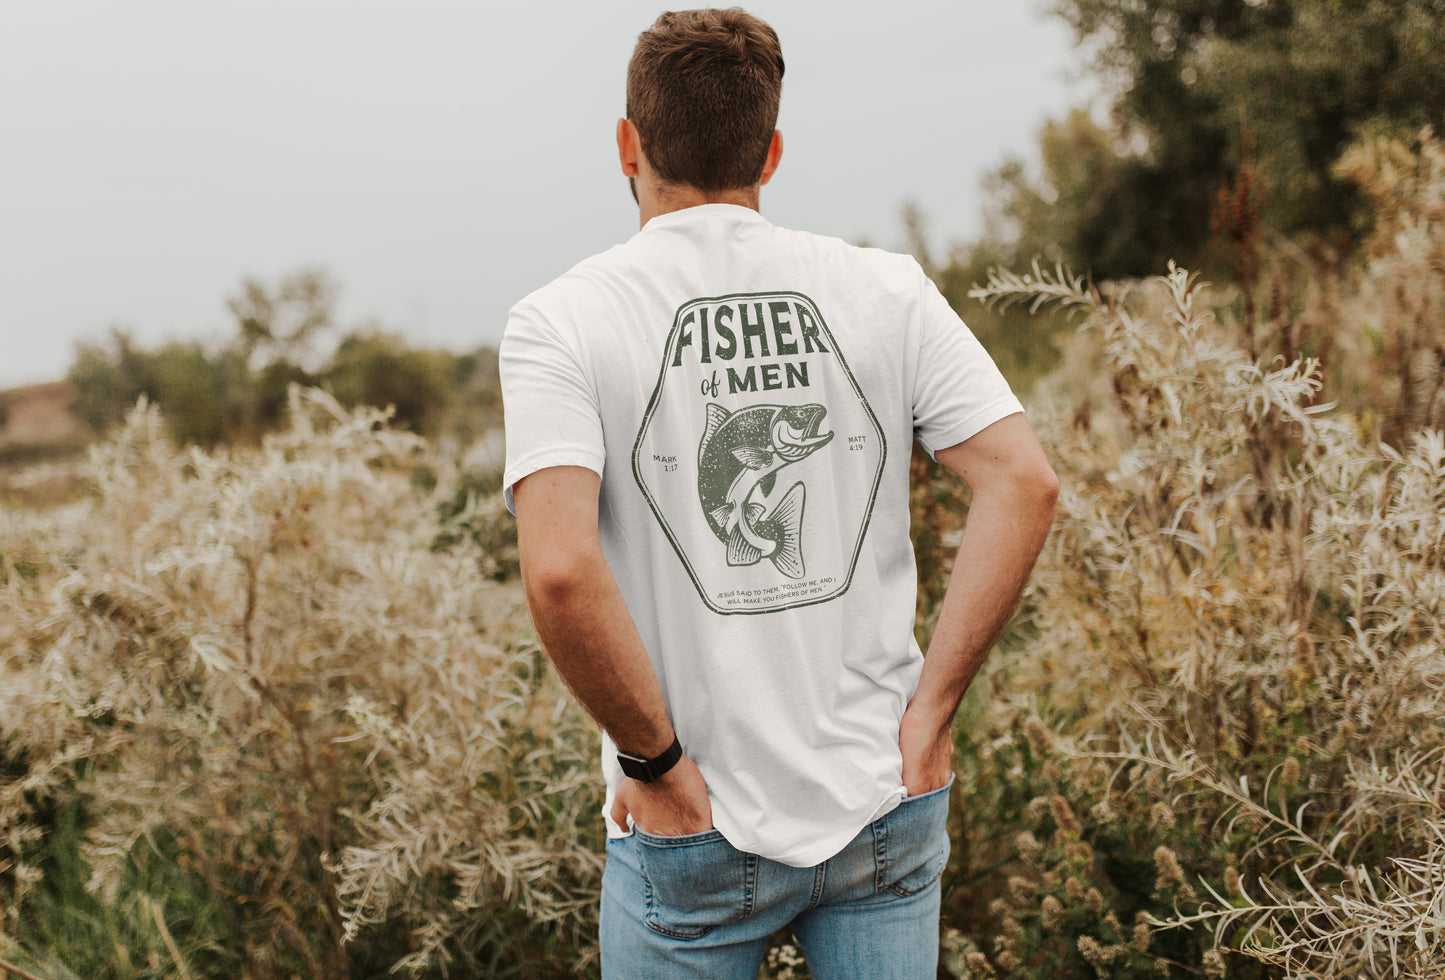 Fisher of Men Christian Shirt | Christian Apparel | Christian Shirt for Men | Christian Tshirt | Fishing Shirt | Fisherman Shirt